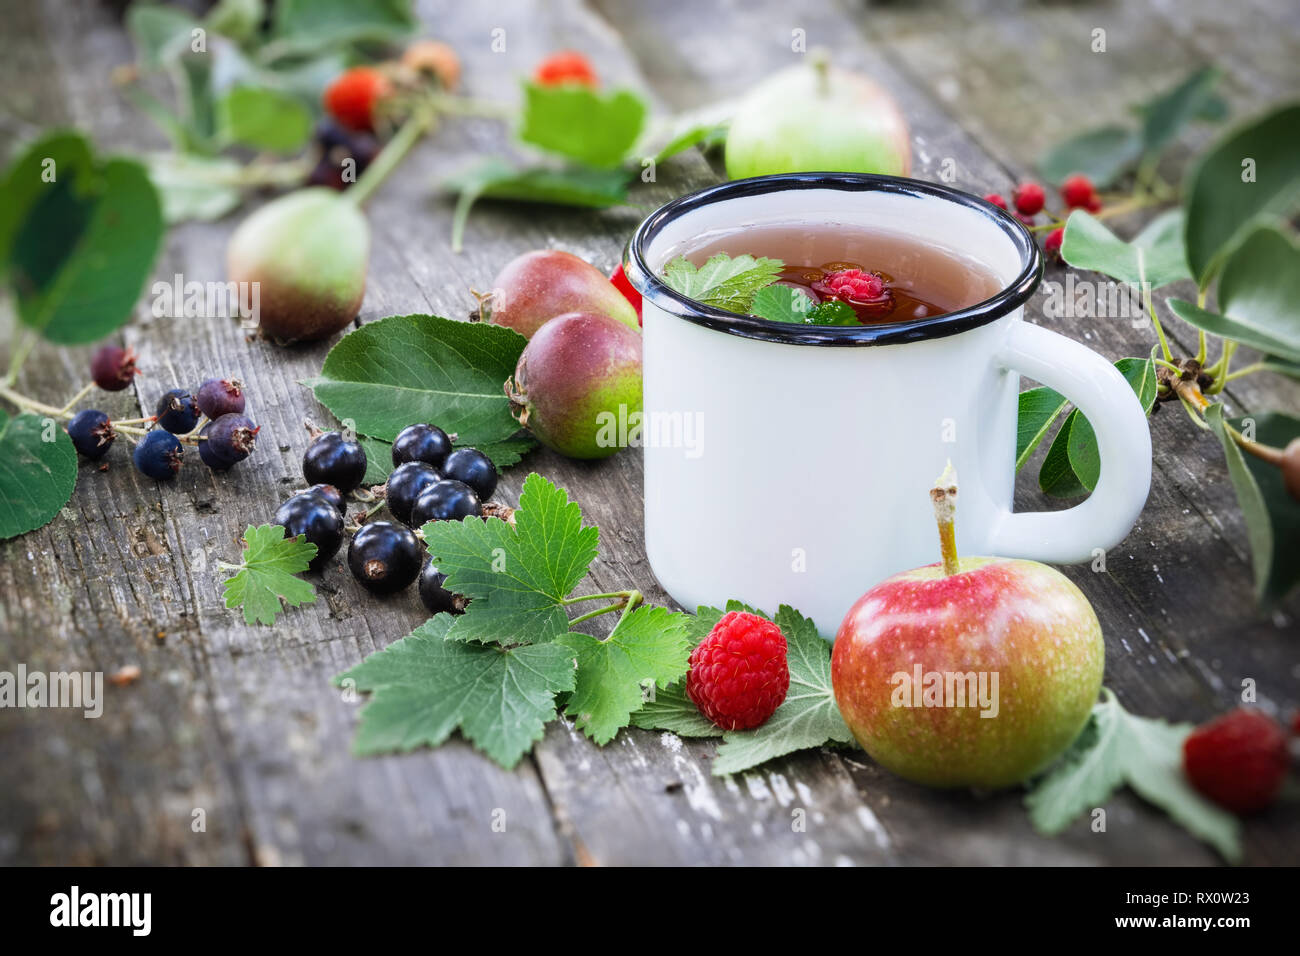 Emaillierte Schale von Obst Tee mit Äpfeln, Birnen, Himbeeren und schwarzen Johannisbeeren Beeren auf hölzernen Tisch im Freien. Stockfoto